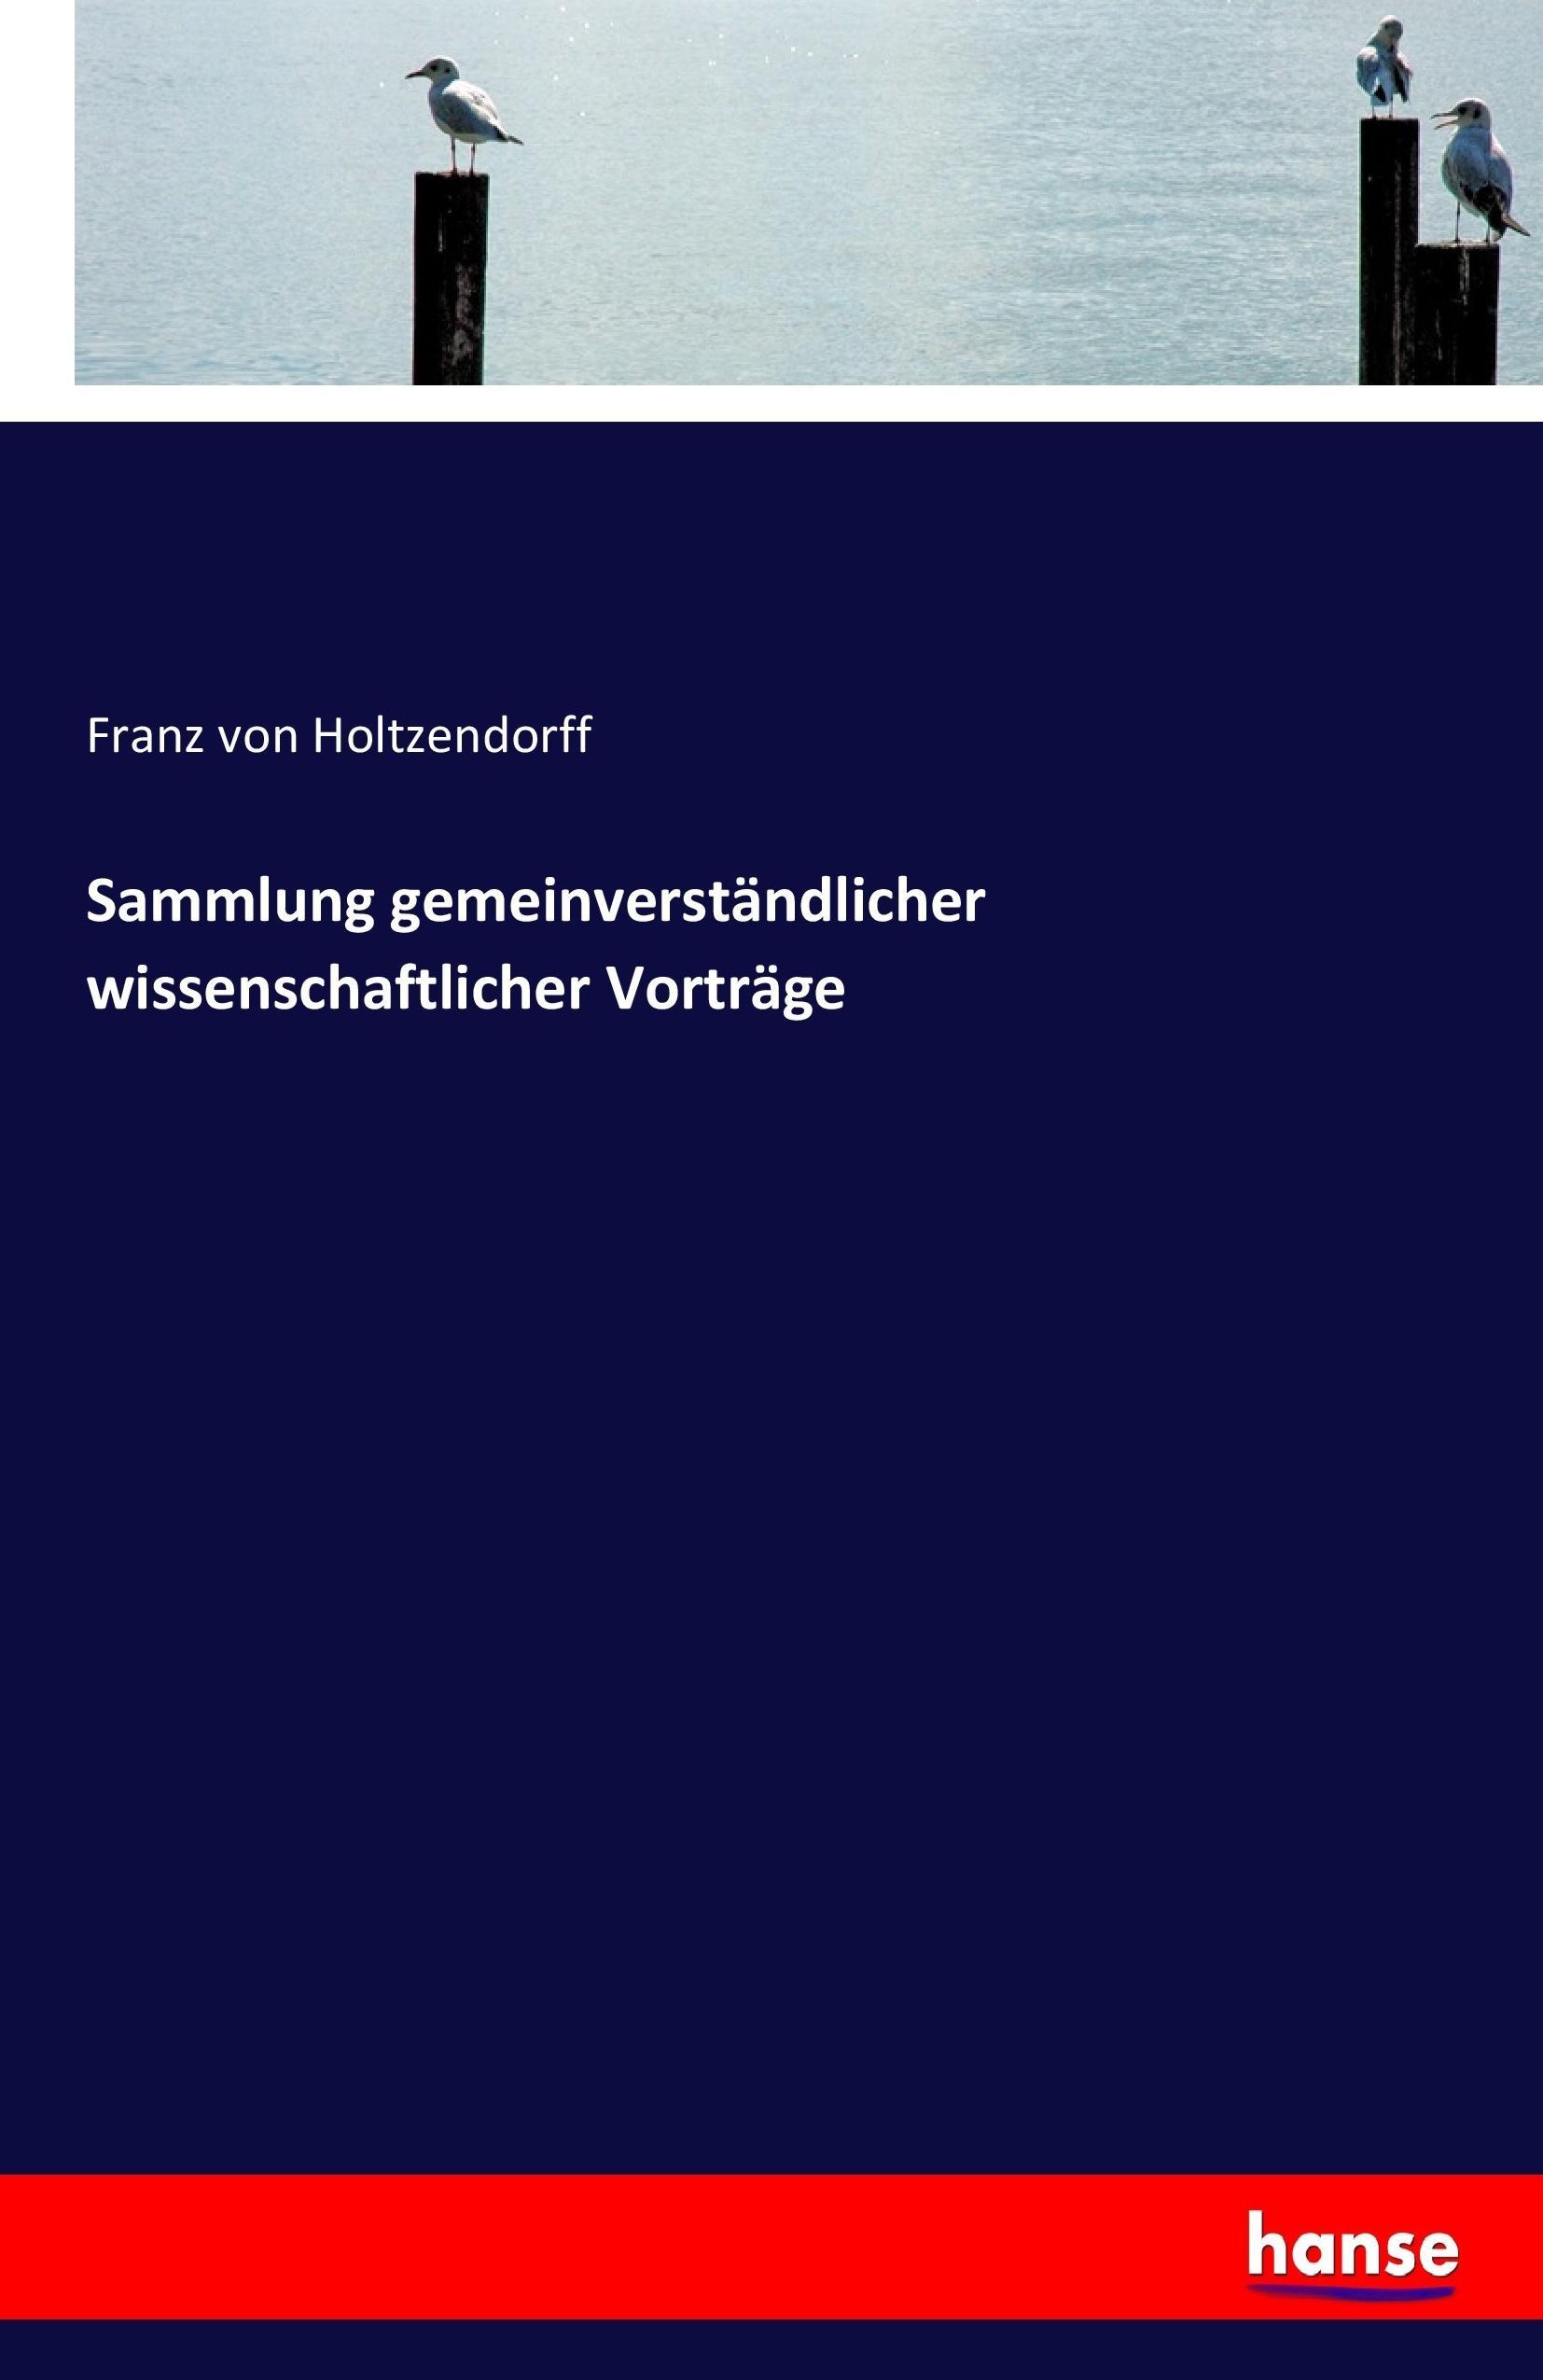 Sammlung gemeinverstaendlicher wissenschaftlicher Vortraege - Holtzendorff, Franz von